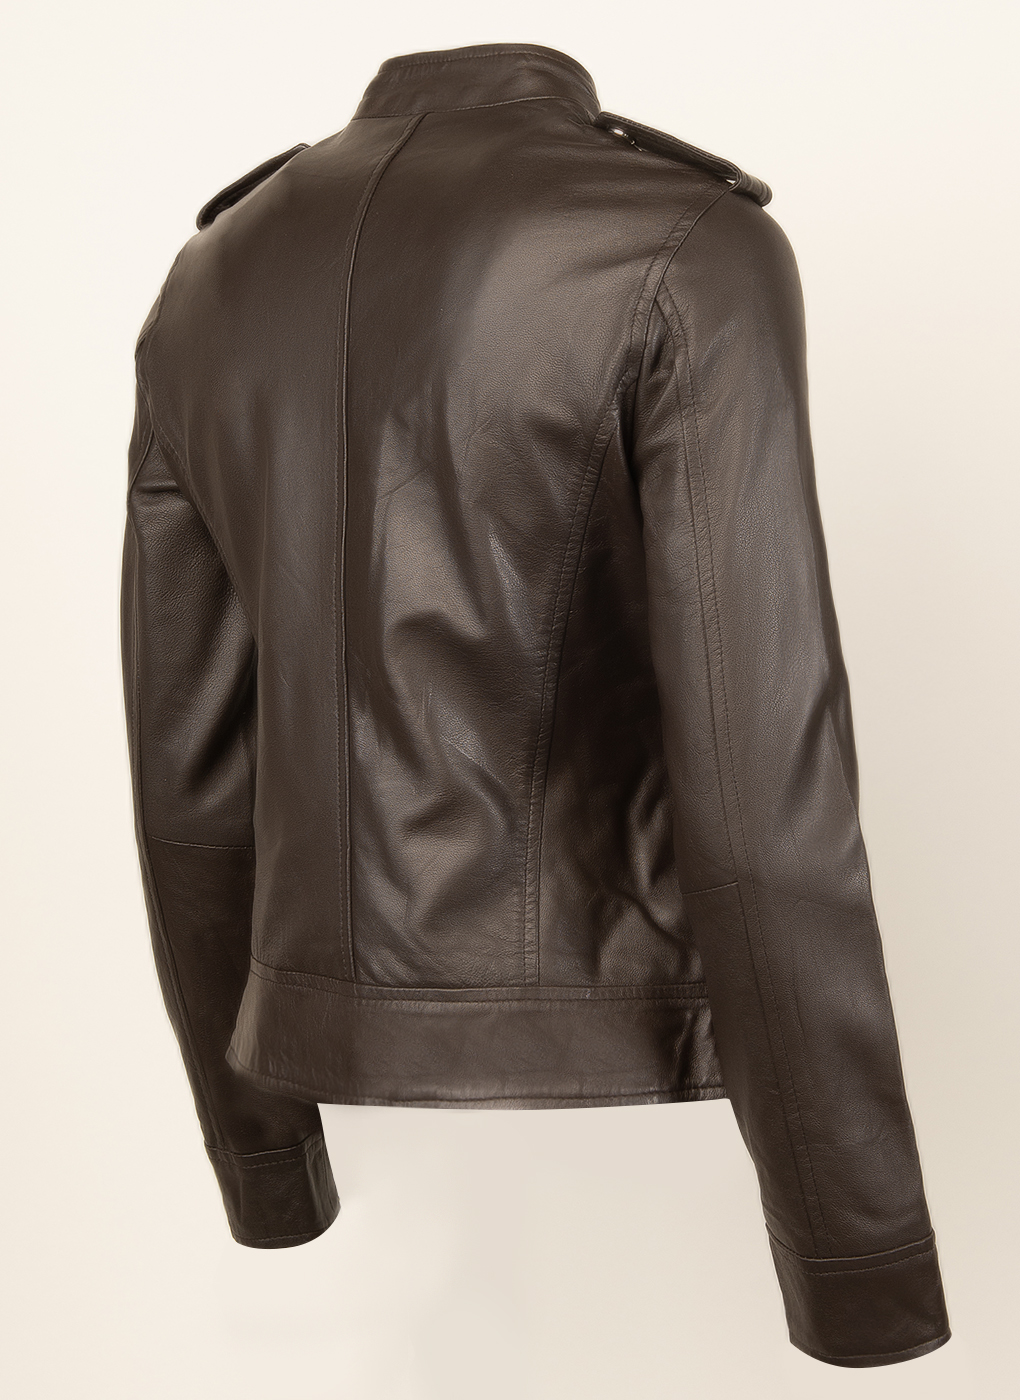 Кожаная куртка женская Каляев 47858 коричневая 46 RU